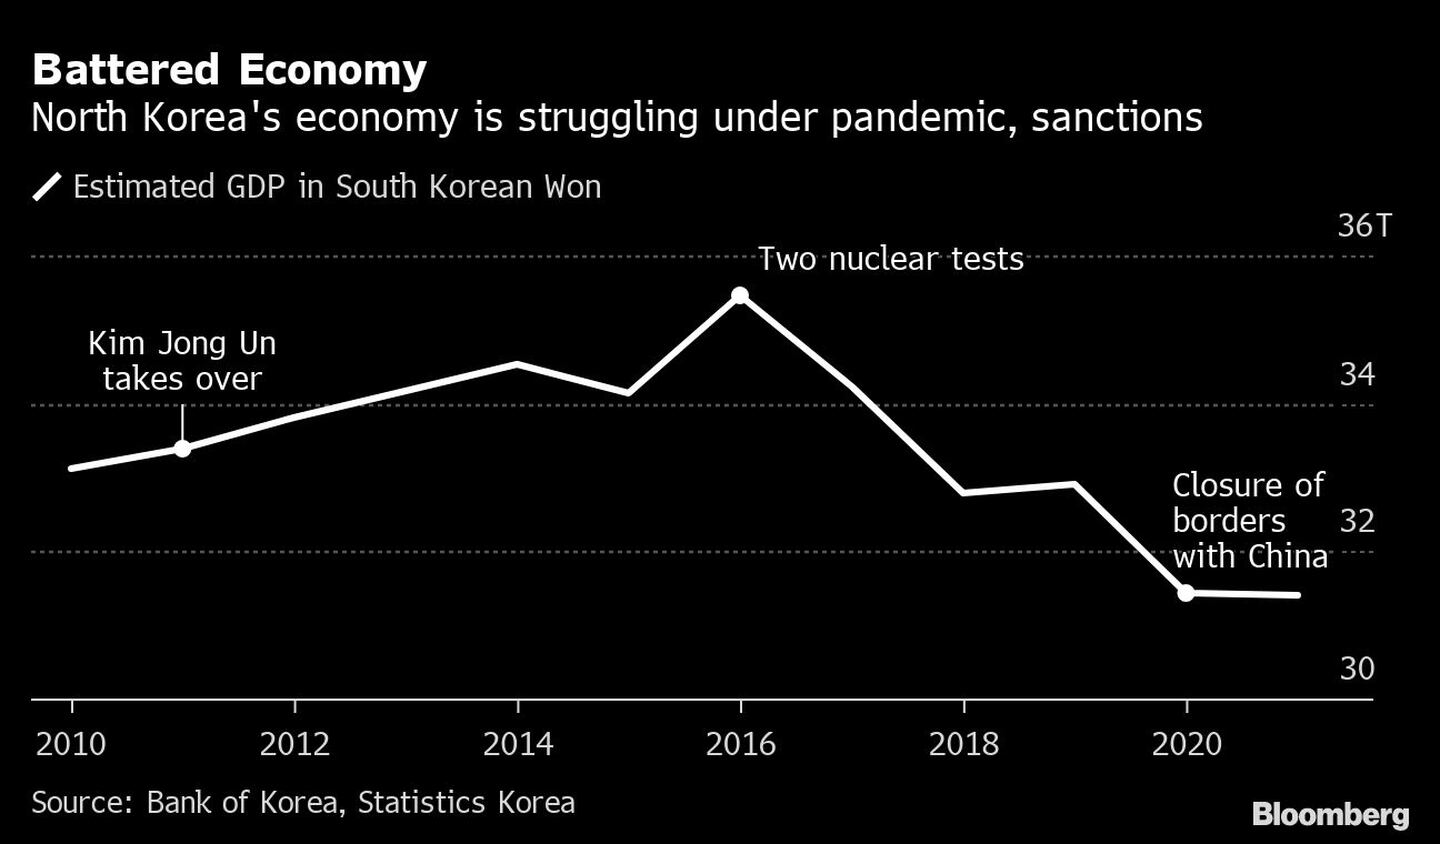 La economía norcoreana se debate entre la pandemia y las sancionesdfd